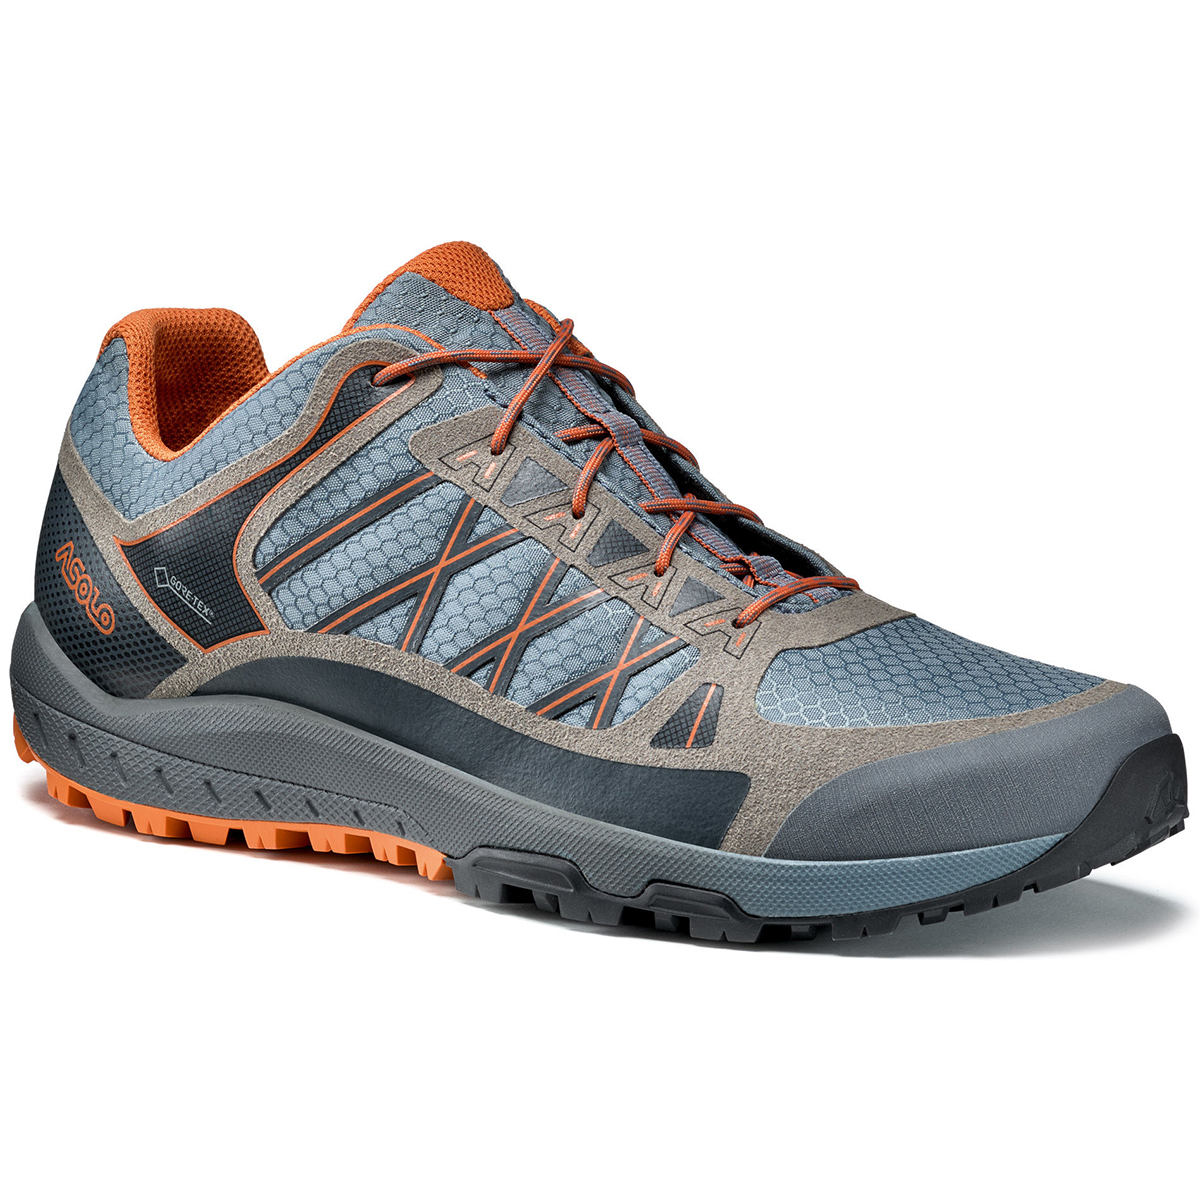 Asolo Men's Grid Gv Low Hiking Shoes - Blue, 10